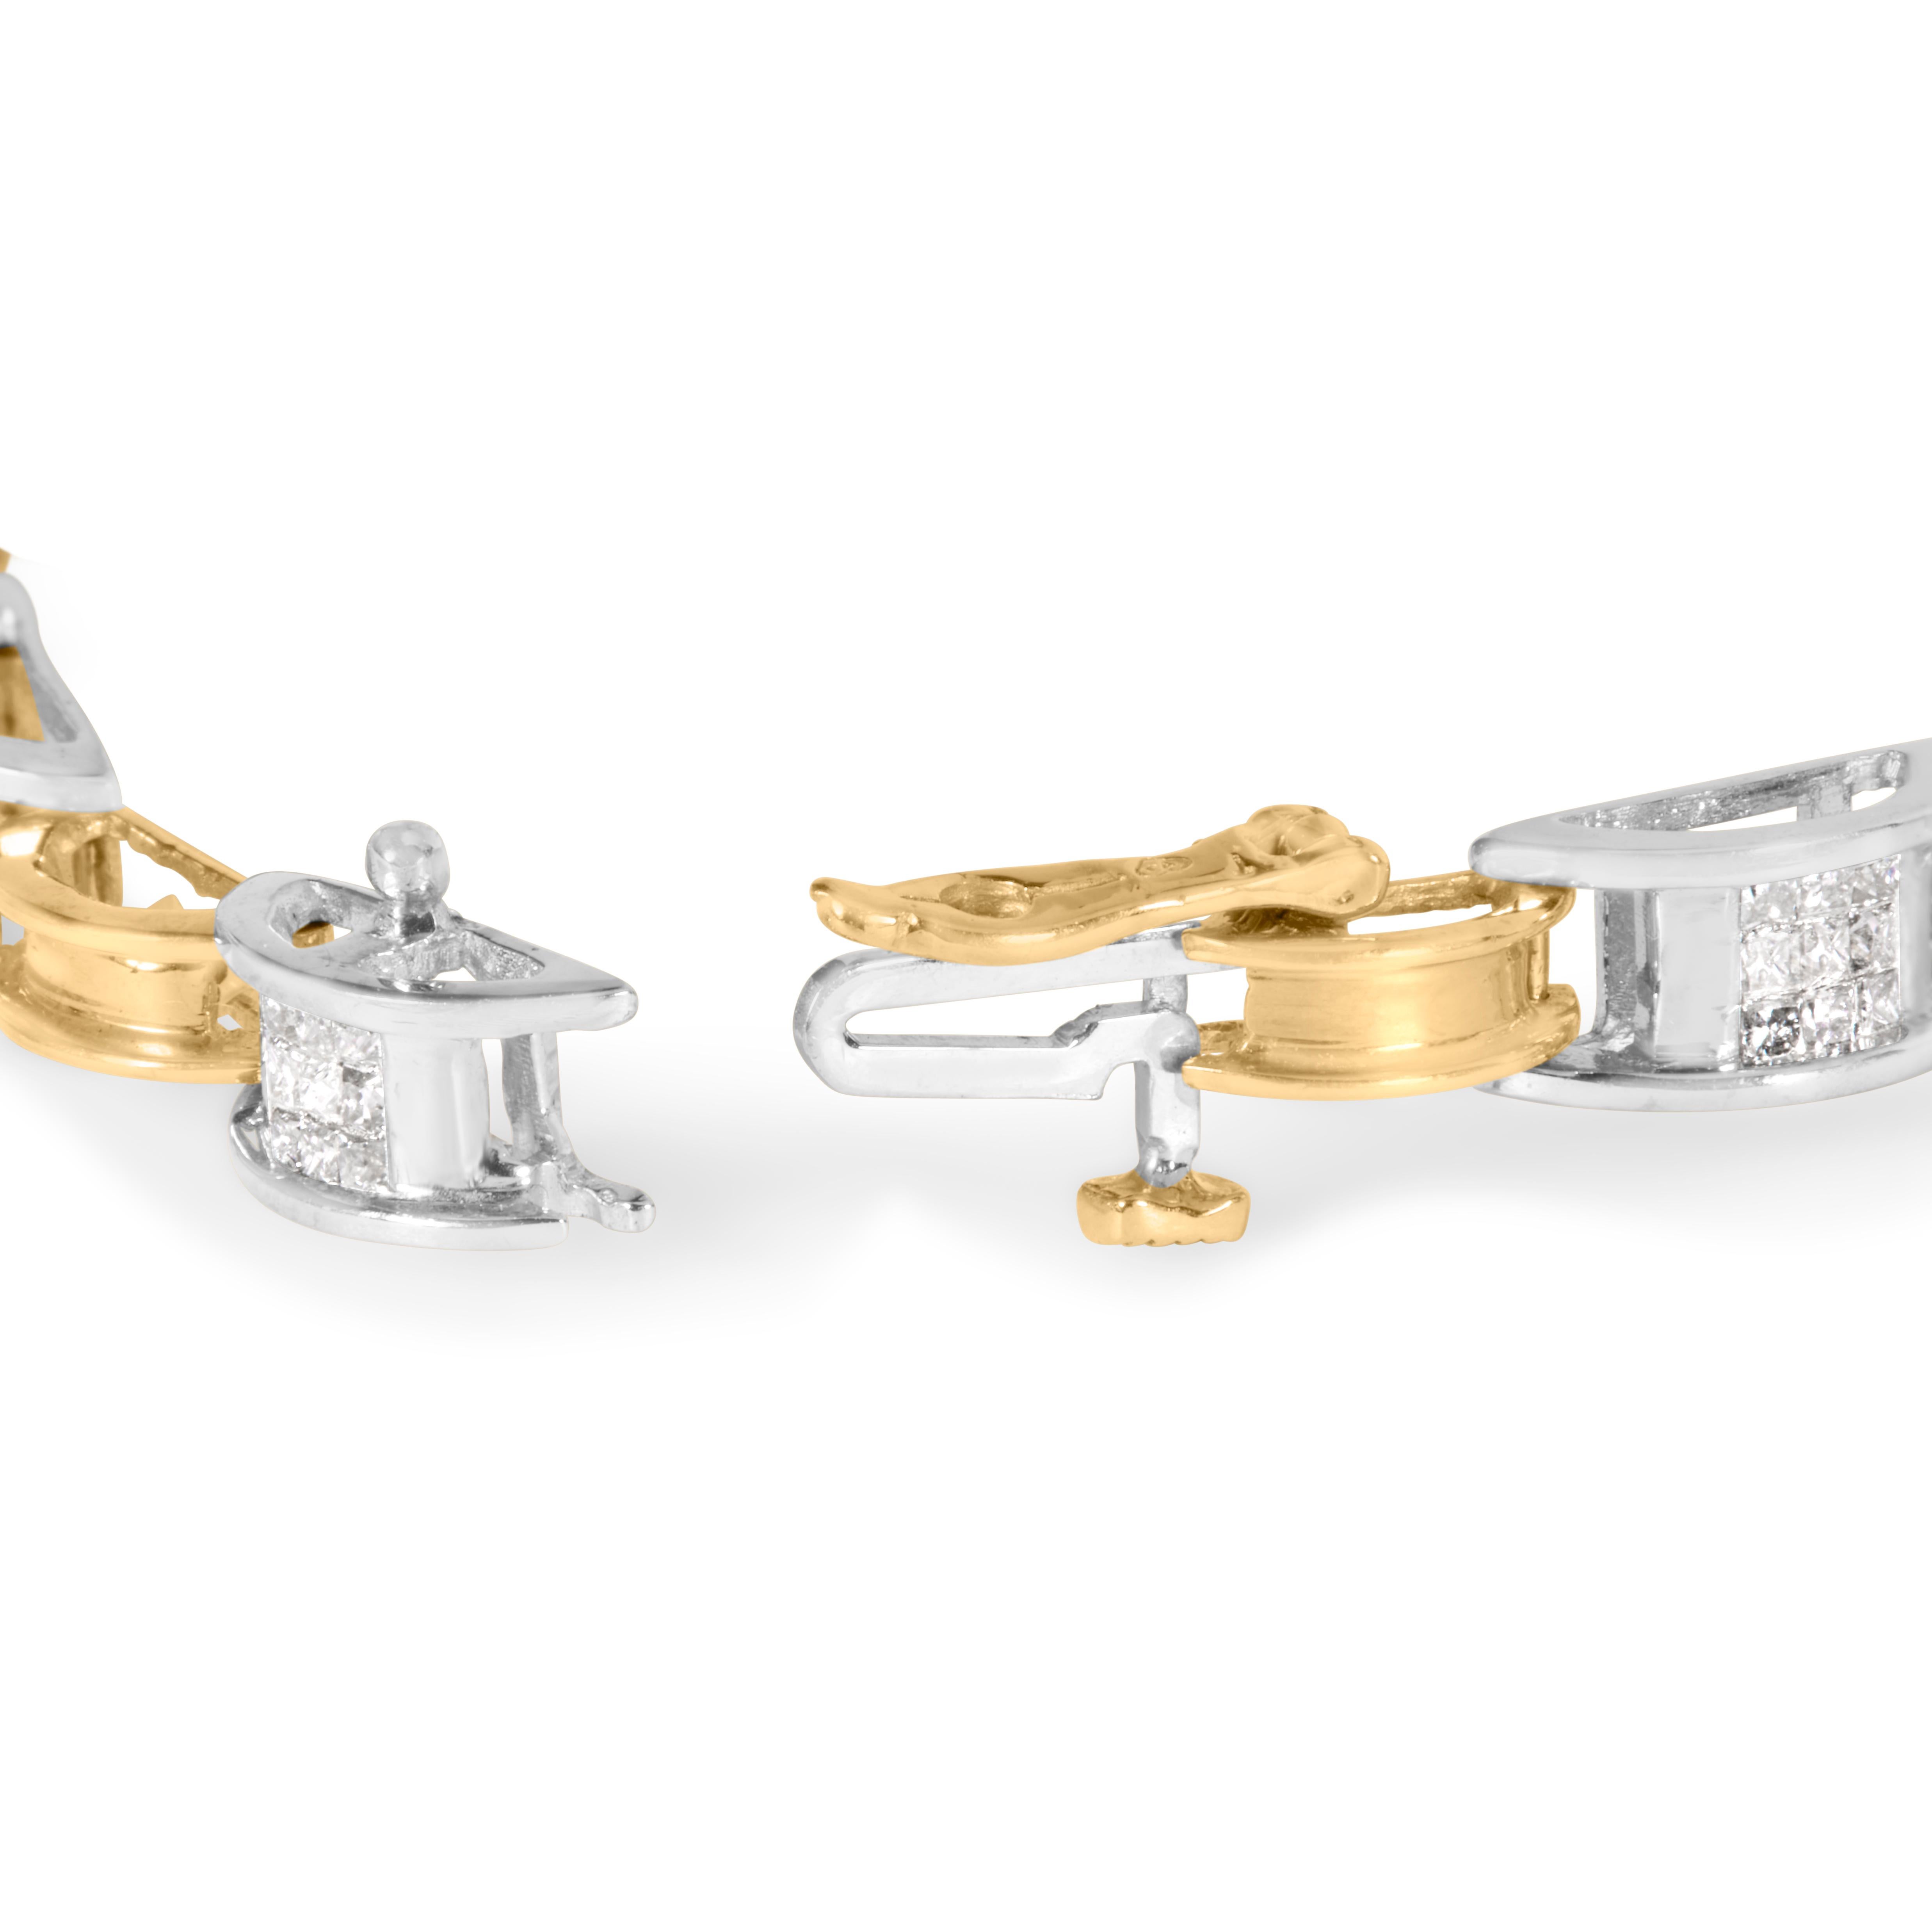 Lassen Sie sich von der luxuriösen Schönheit dieses exquisiten Gliederarmbands aus zweifarbigem 14K-Gold mit Diamanten im Prinzessinnenschliff verzaubern. Mit 99 natürlichen Diamanten von insgesamt 1,00 Karat strahlt dieses Schmuckstück Eleganz und